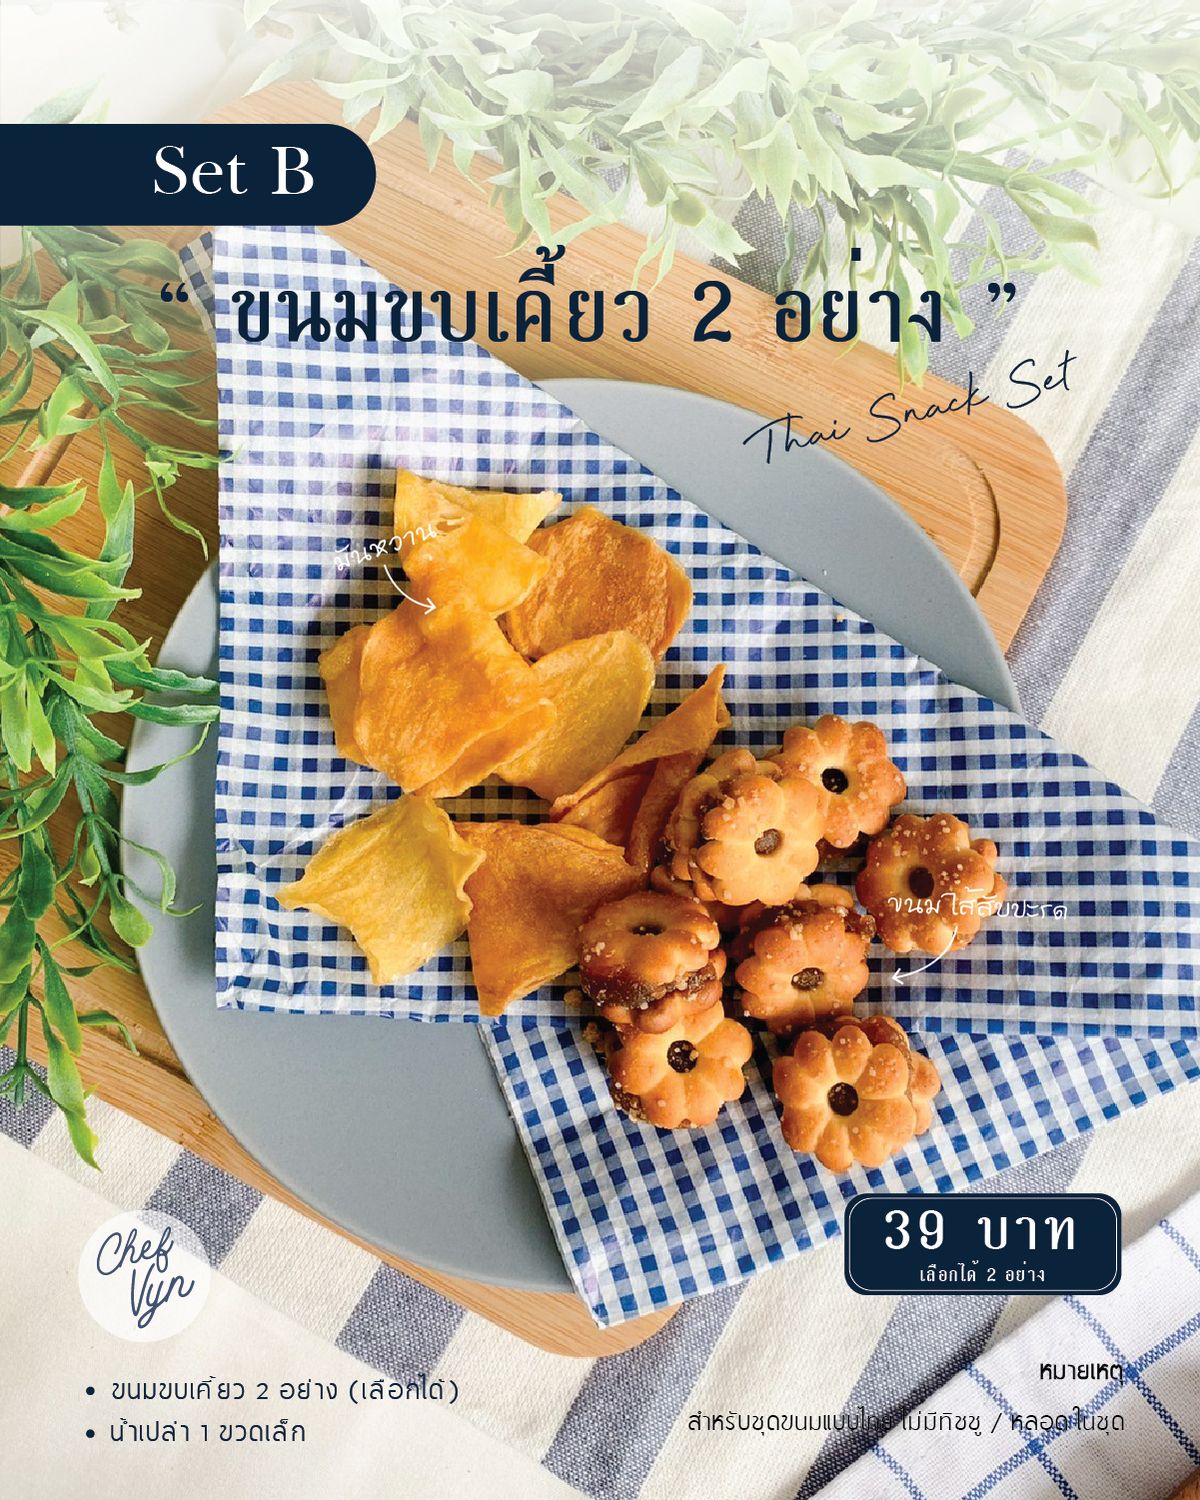 Thai Snack ขนม 2 อย่างพร้อมน้ำและถุง SetB 02